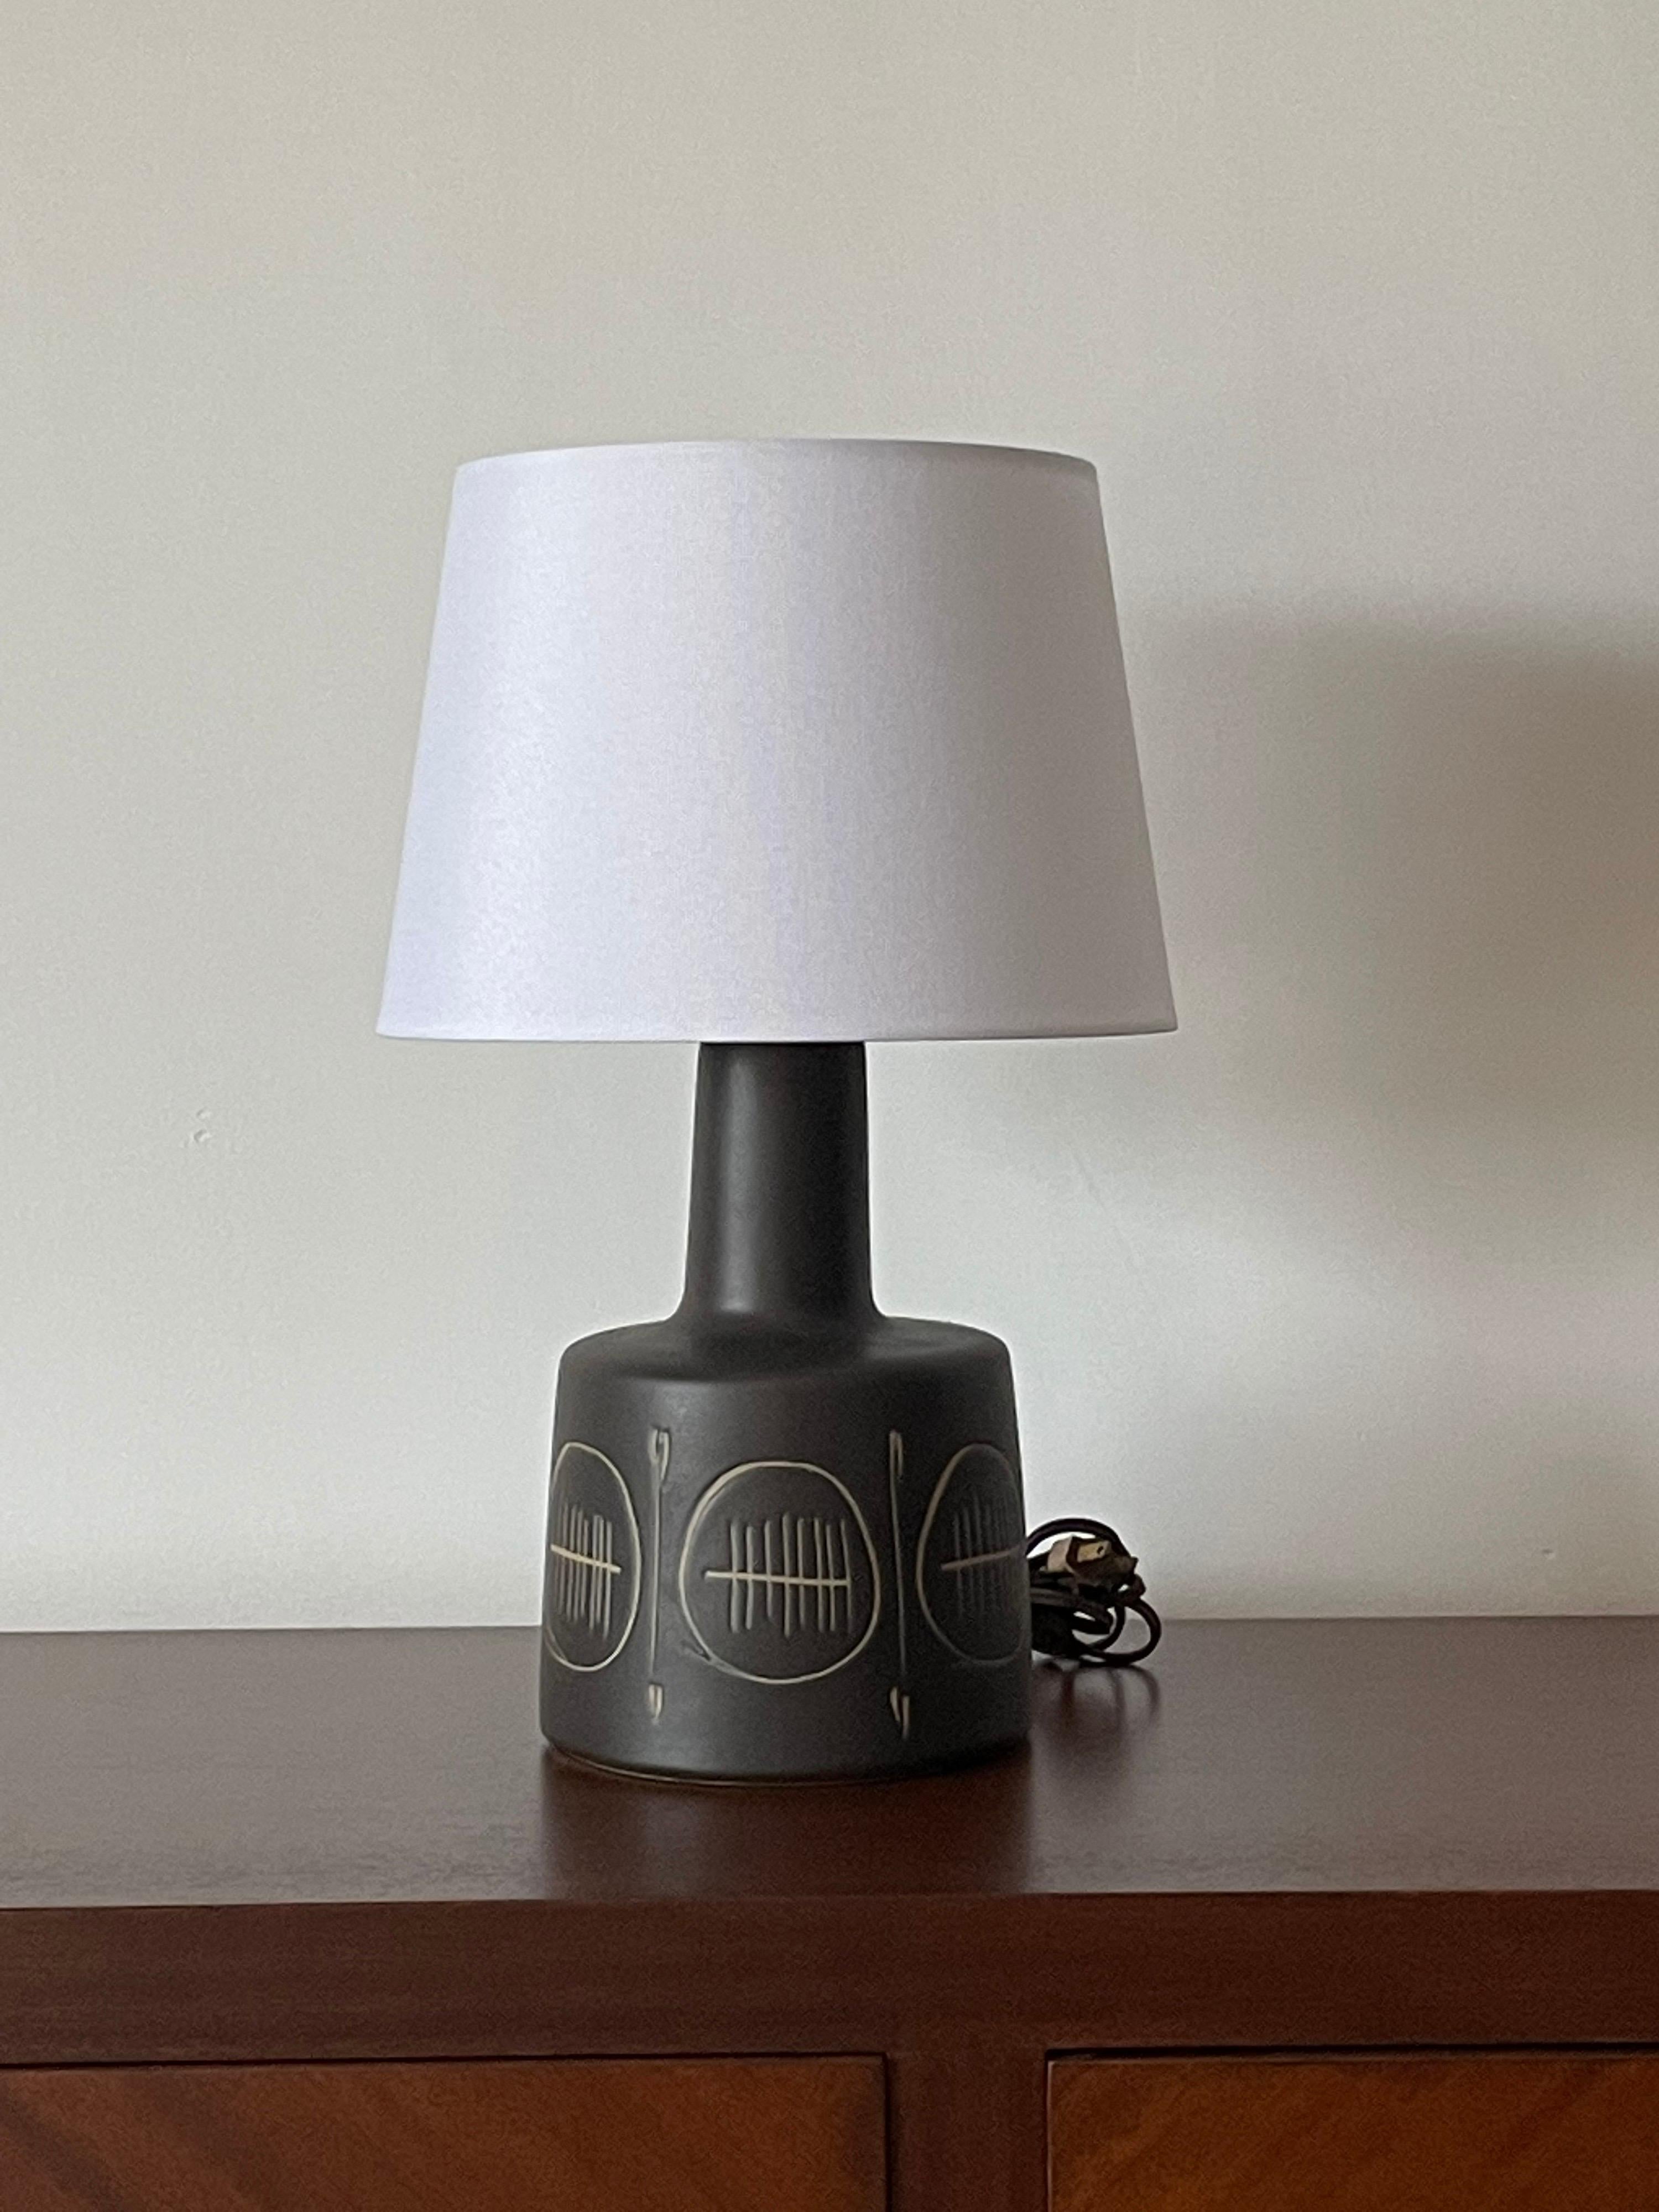 Wunderschöne matte, dunkle (schwarze mit einem leichten Hauch von Marine) Lampe des berühmten Keramikerduos Jane und Gordon Martz für Marshall Studios. Tolle Textur, Form und Farbe. Diese Lampe passt gut zu einer Vielzahl von Interieurs: modern,